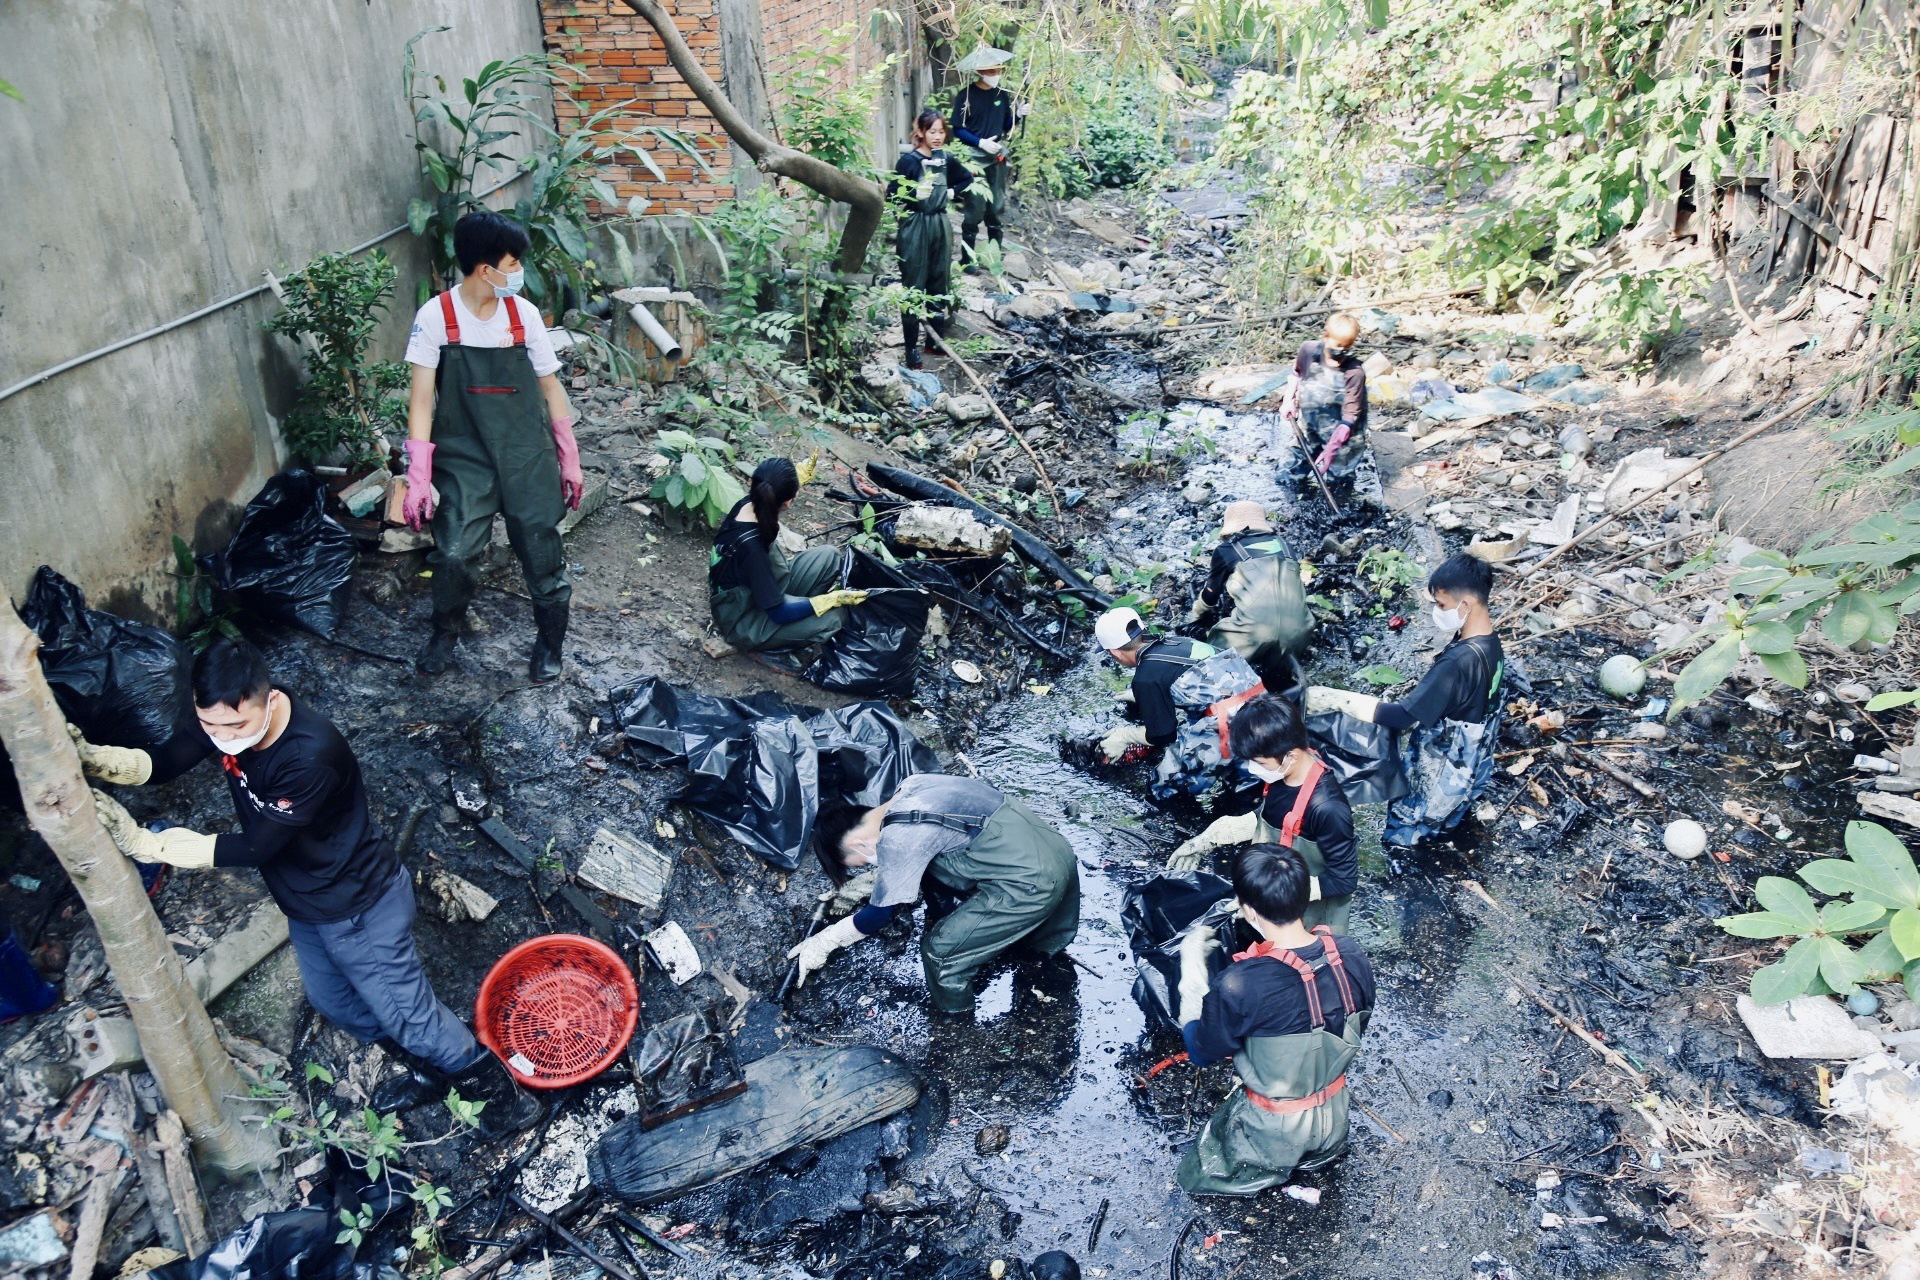 Biến kênh rạch hôi thối ở Sài Gòn trở nên sạch đẹp hơn, nhóm bạn trẻ mong người dân đừng vứt rác trở lại - Ảnh 2.